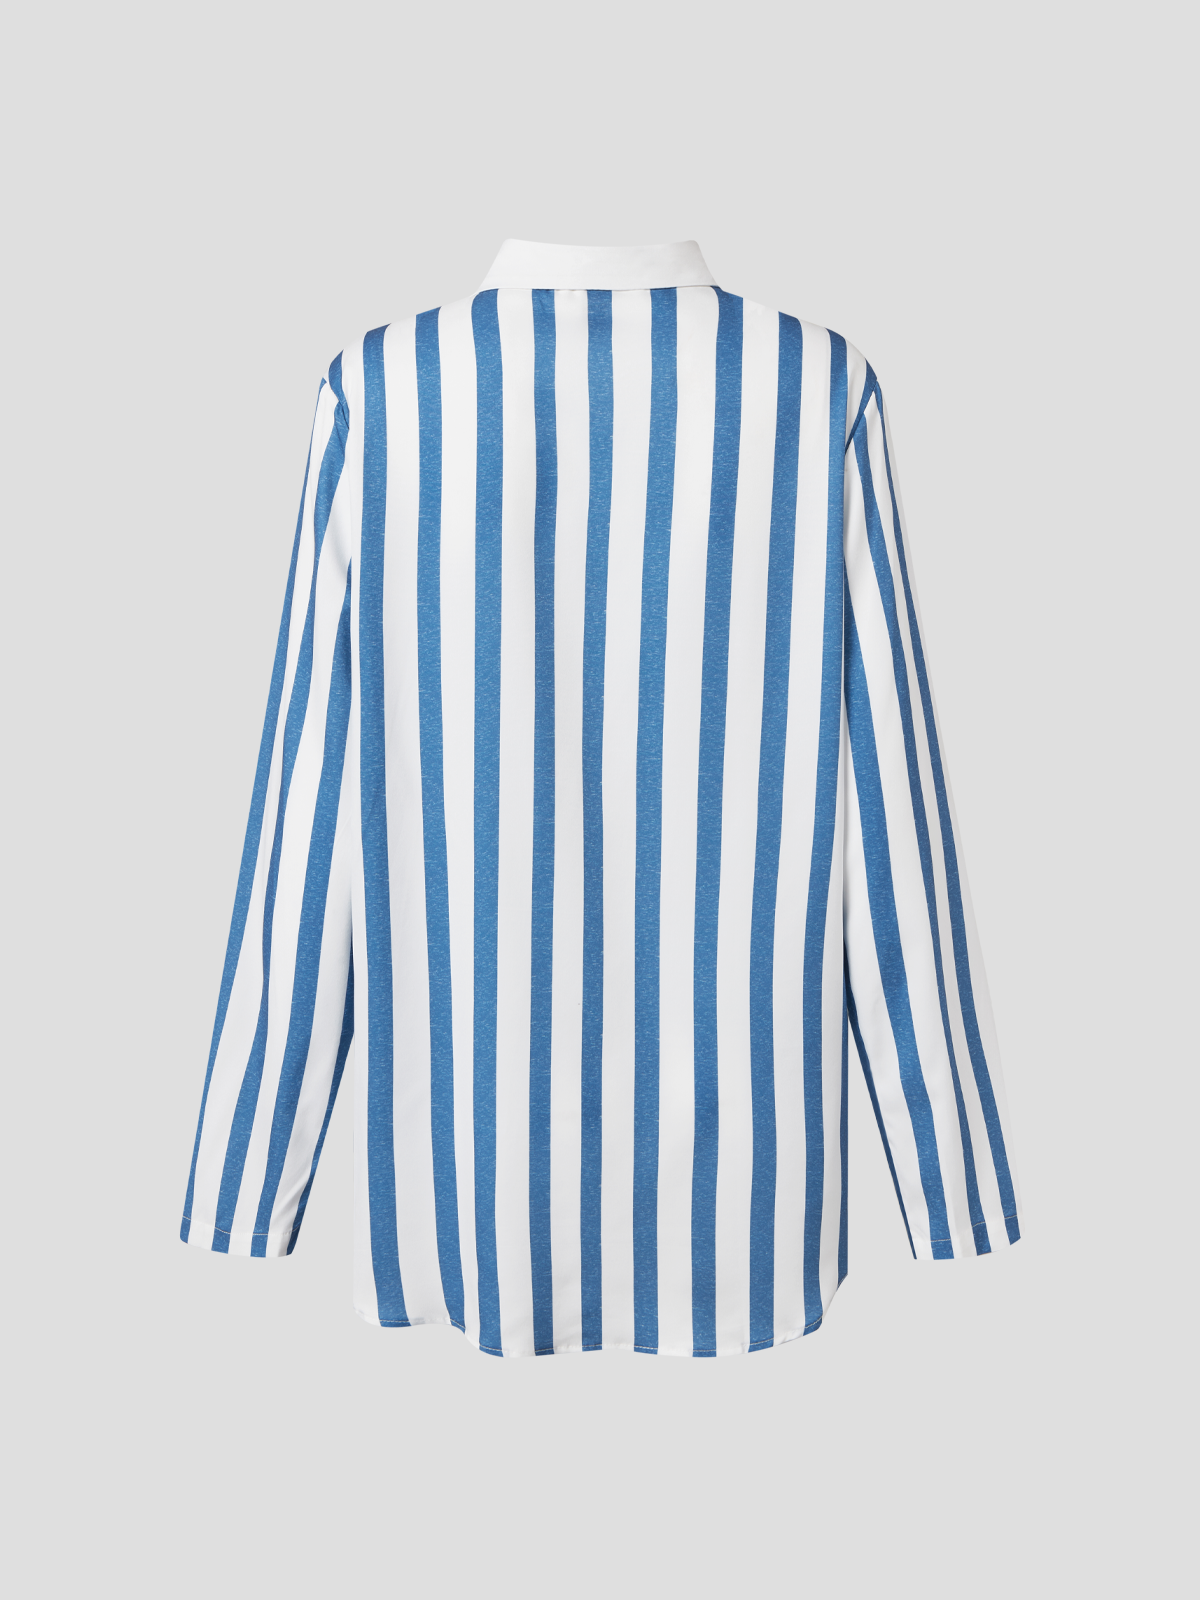 Shirt Collar Stripes Cotton-Blend Long Sleeve Shirt & Top